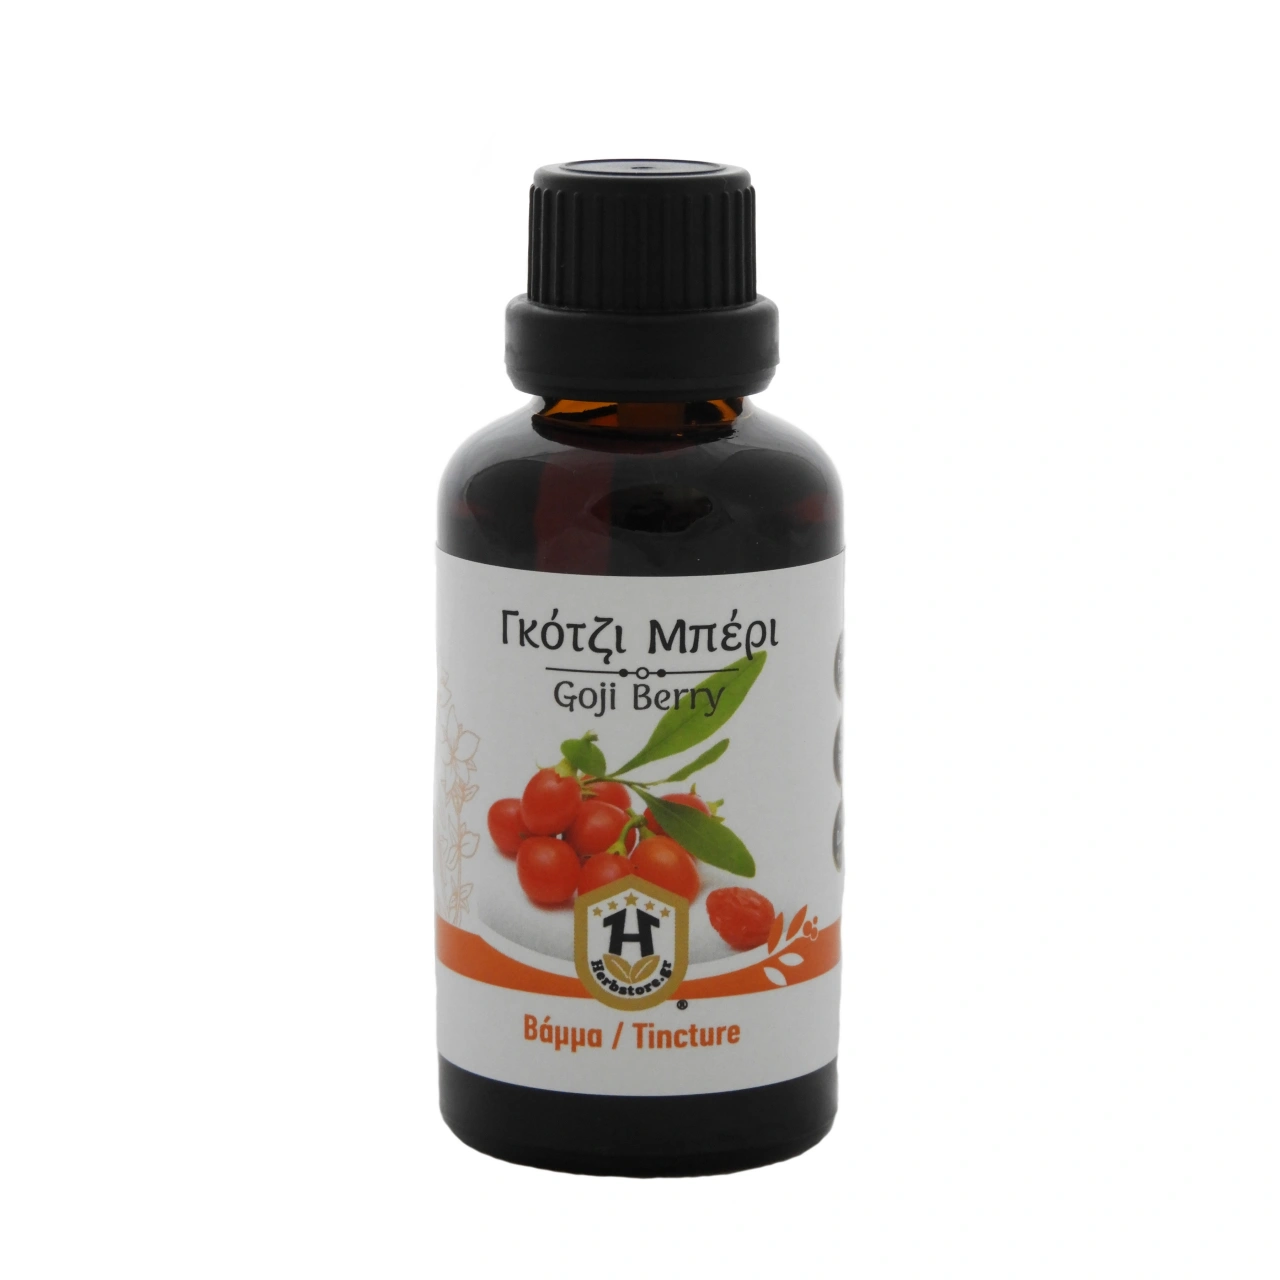 Βάμμα Γκότζι Μπέρι 50ml - HerbStore - Βότανα, Φυτικά προϊόντα υγείας